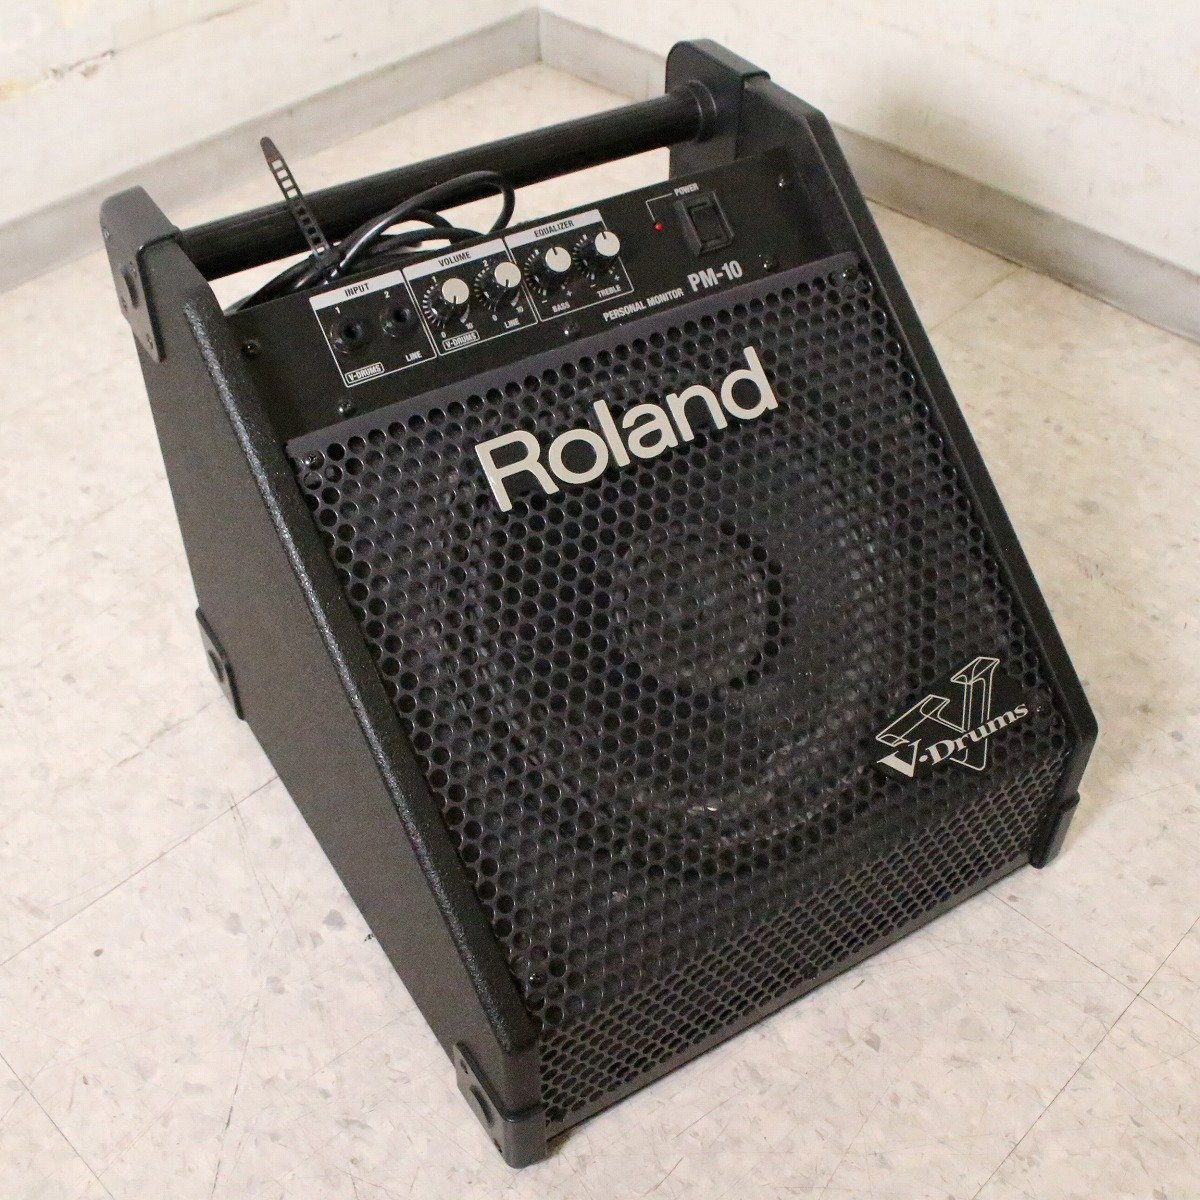 評判良いRoland PM-100 Vドラム モニタースピーカー ギター